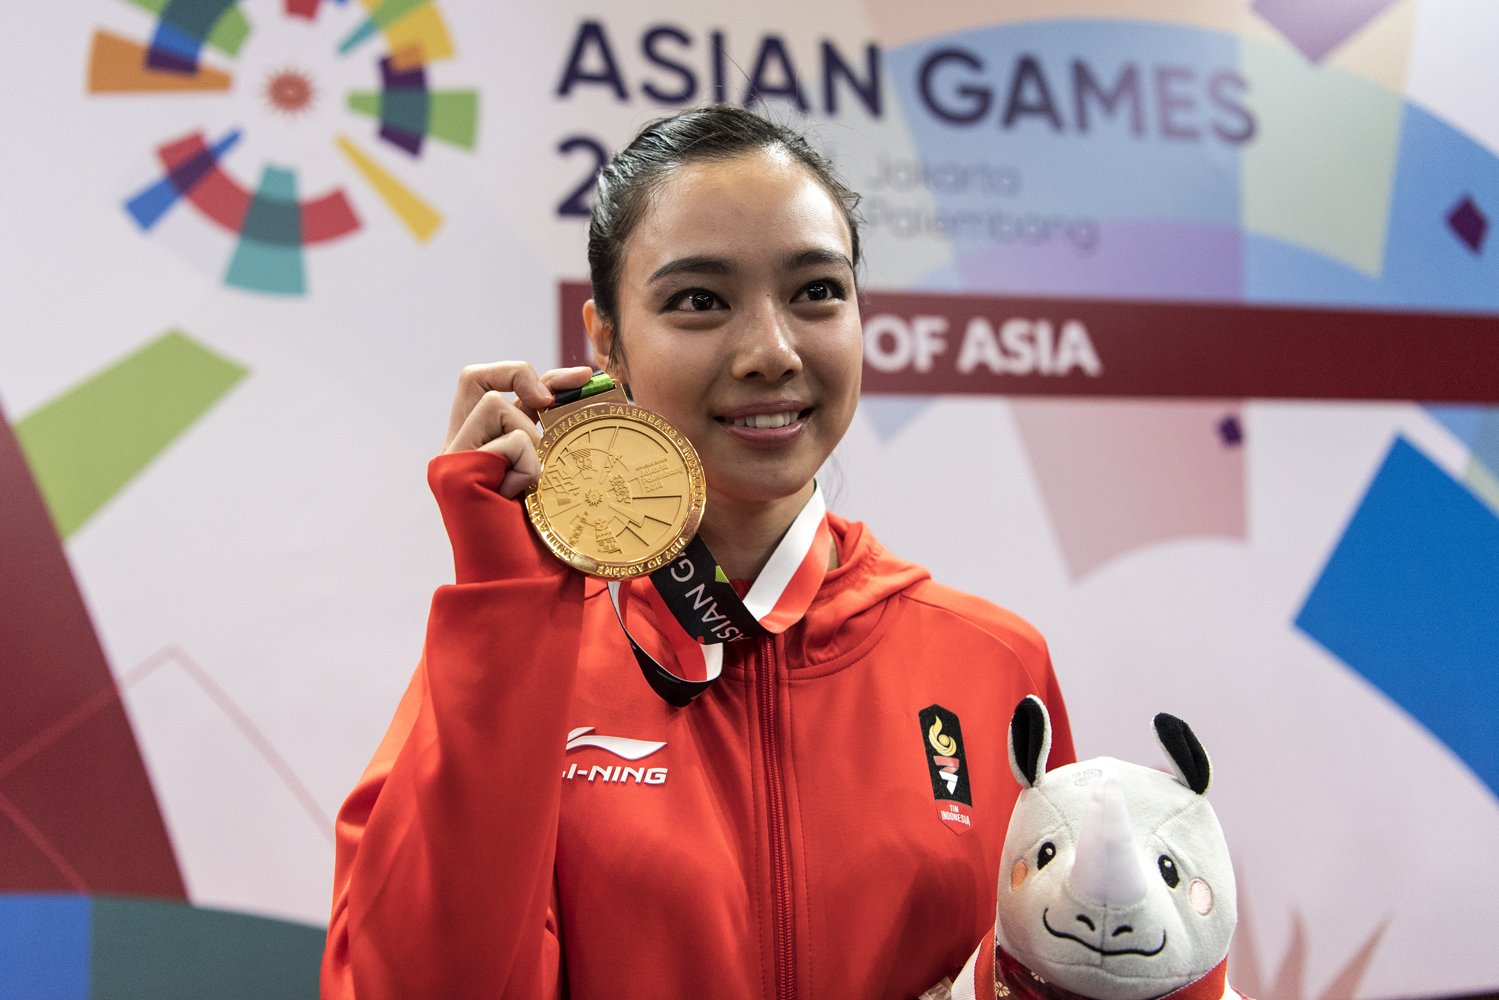 Atlet wushu Indonesia Lindswell menunjukkan medali emas yang diraih dari nomor Tajiquan dan Taijijian Putri Wushu Asian Games 2018 usai upacara penyerahan medali di JIExpo, Kemayoran, Jakarta, Senin (20/8).